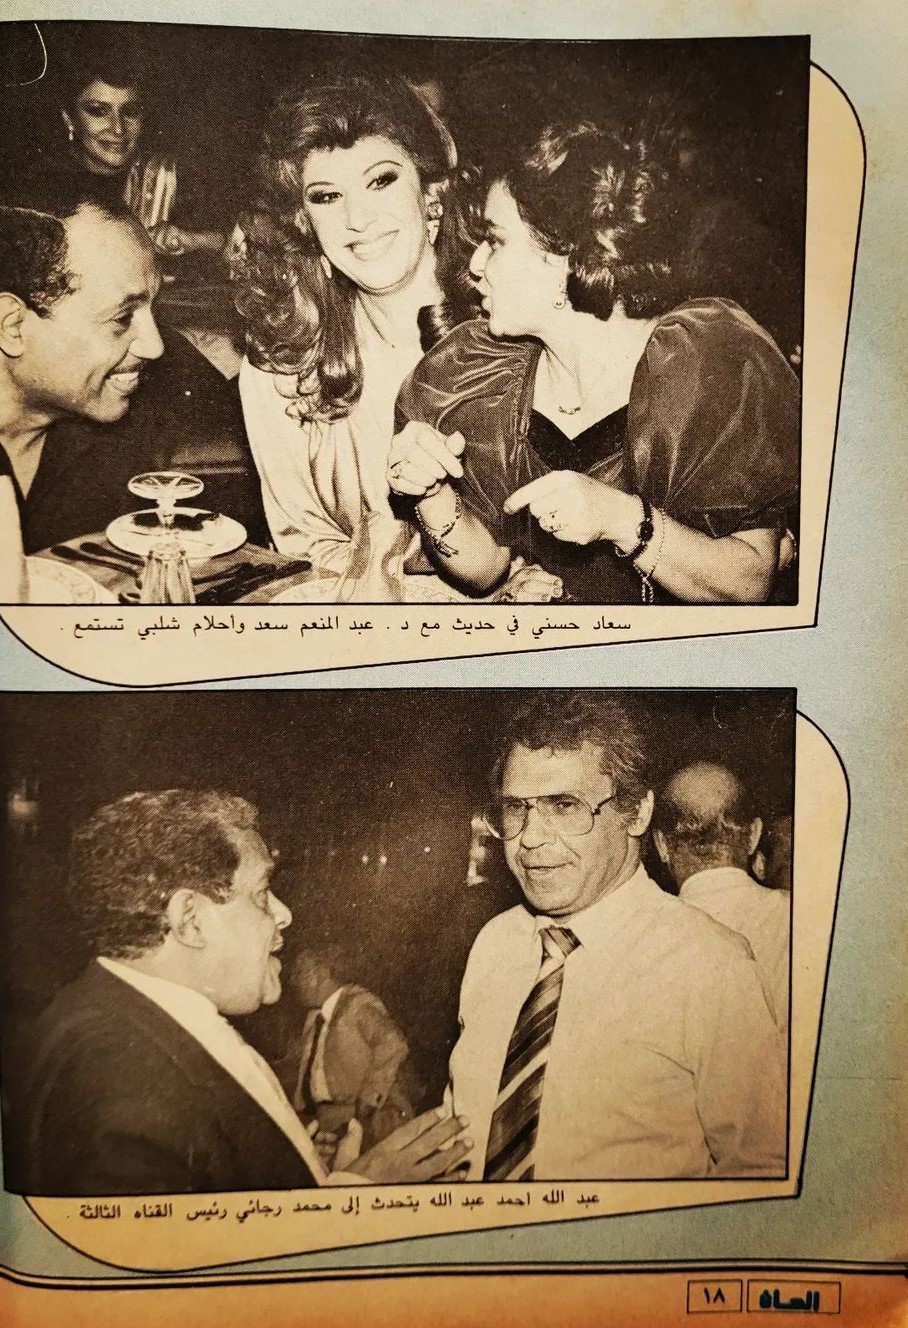 1986 - خبر صحفي : سندريللا الشاشتين .. في احتفال جمعية فناني الشاشة الصغيرة 1986 م 519